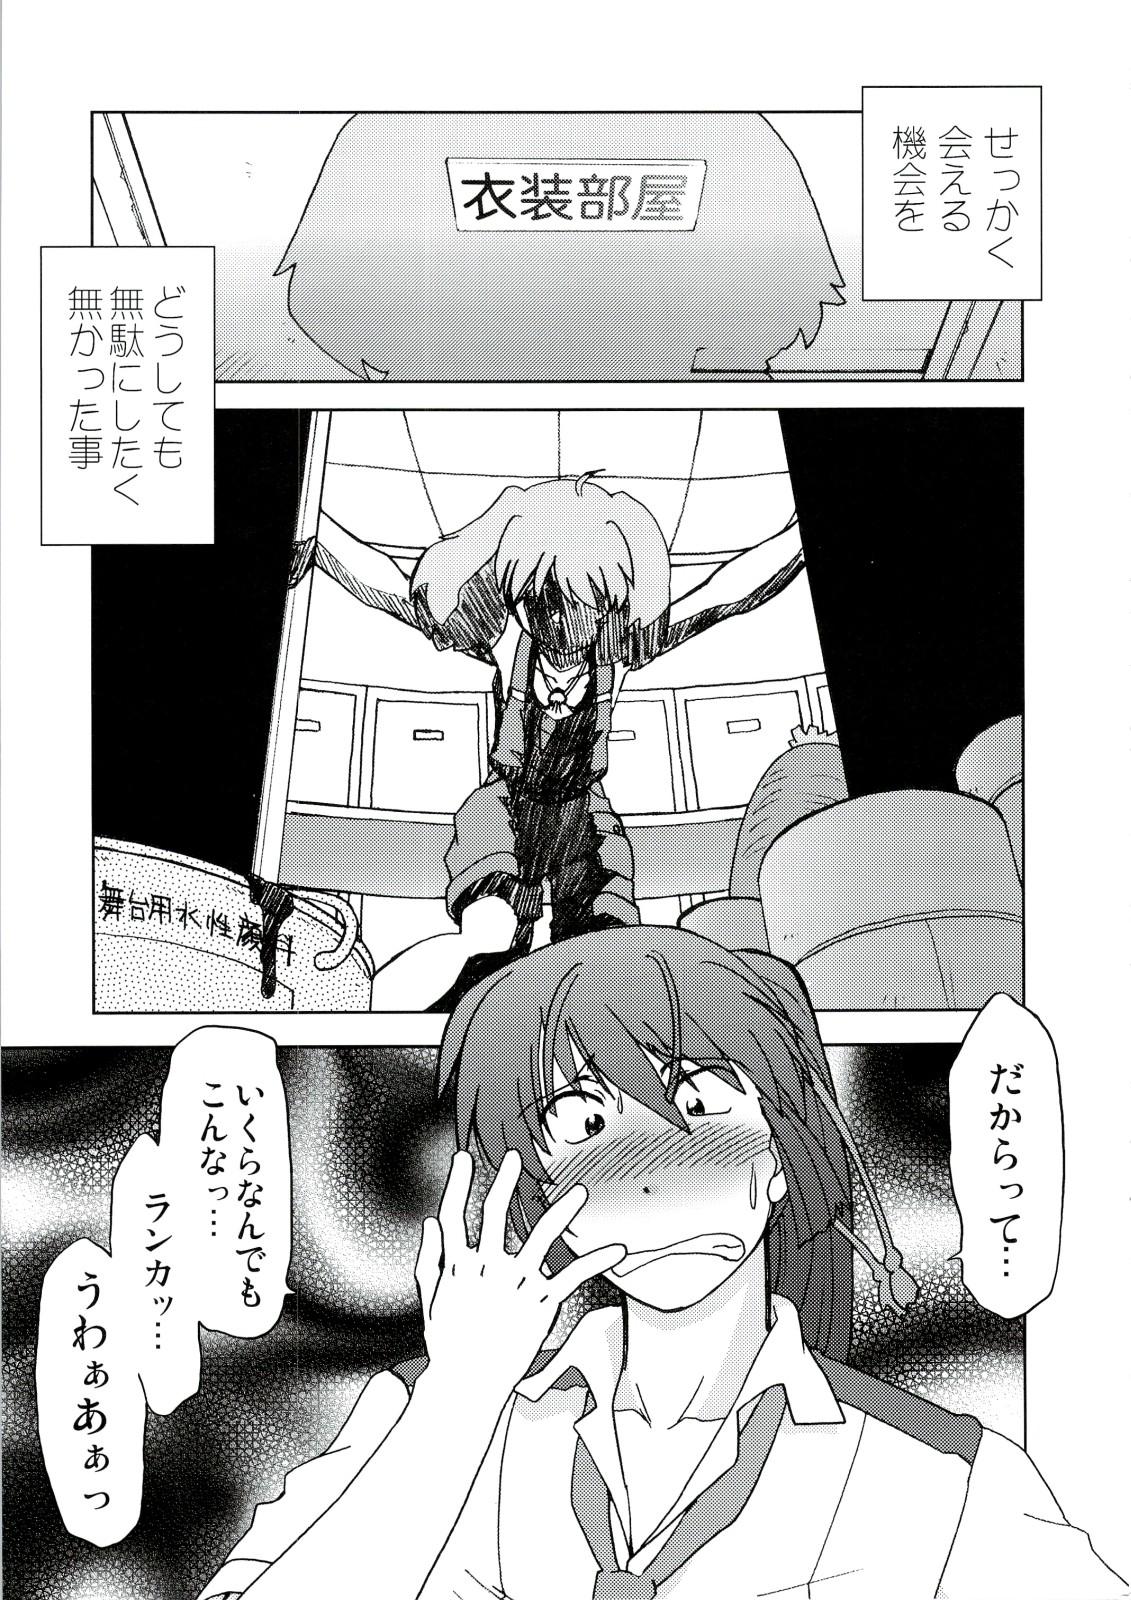 Fetiche Kishou Tenketsu 6 - Macross frontier Pounded - Page 12